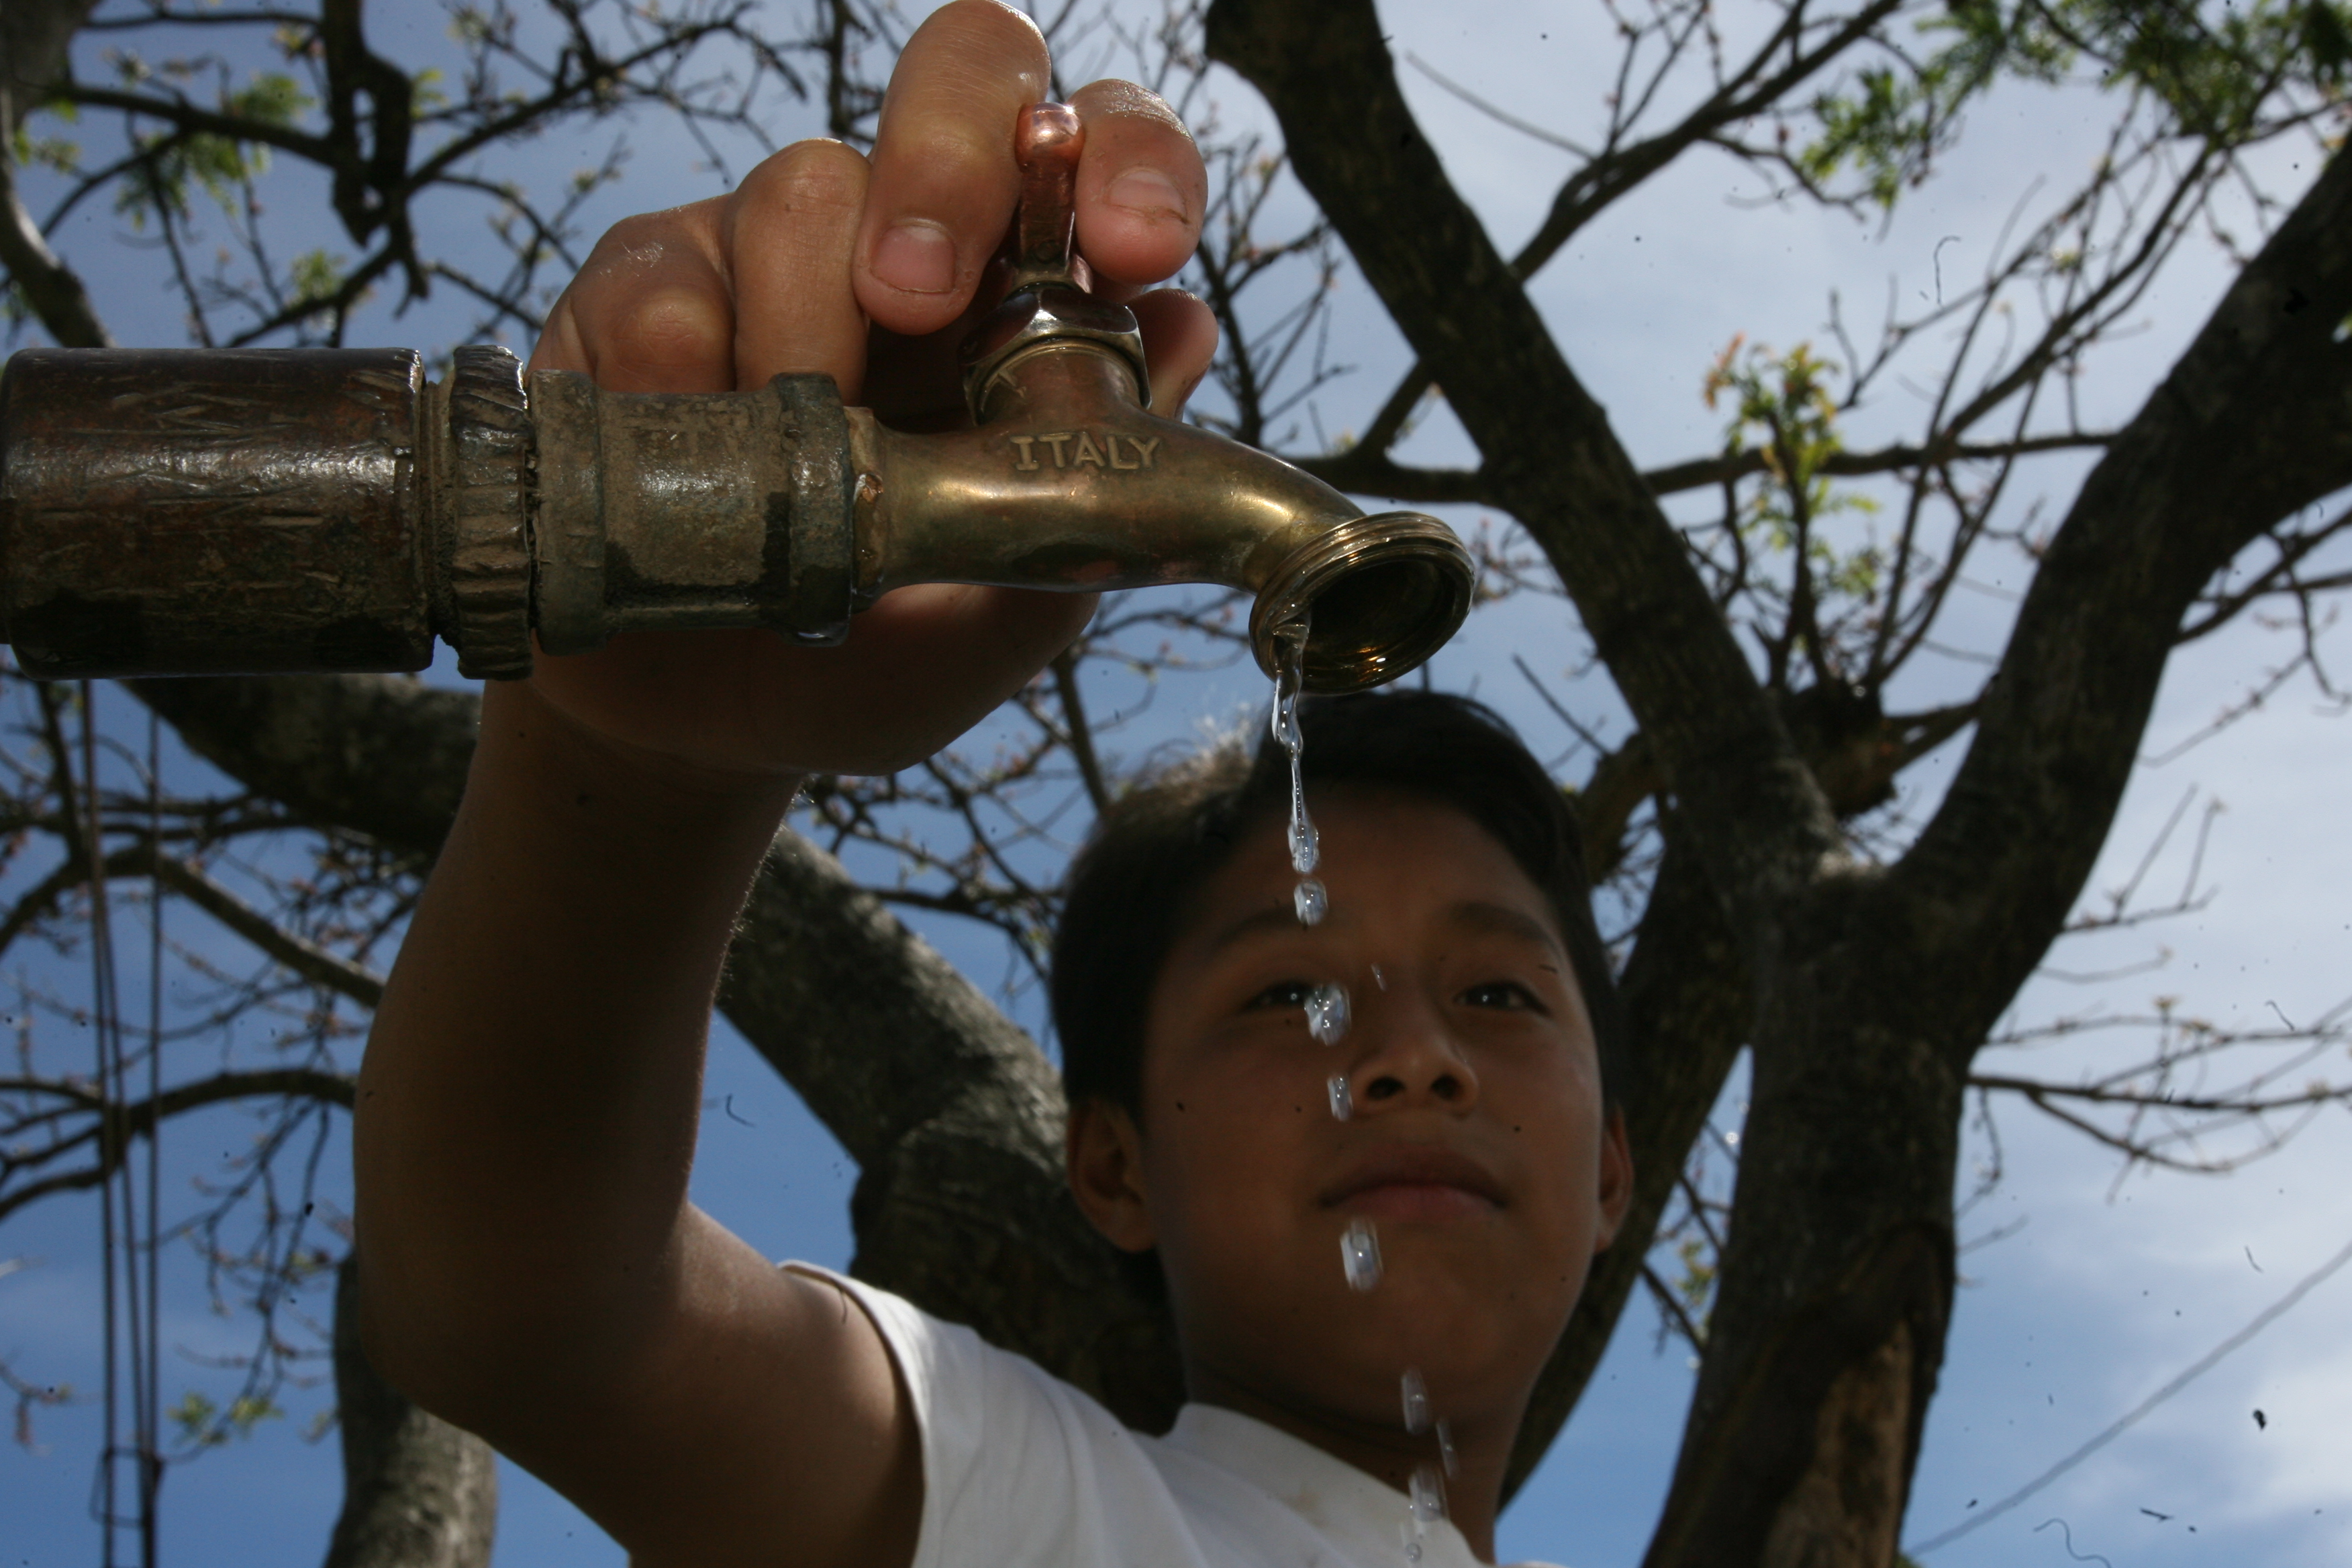 Guatemala recibe cada año suficiente agua de lluvia para atender la necesidad de la población, pero no se ha tratado de forma adecuada. (Foto Prensa Libre: Esbin Garcia)